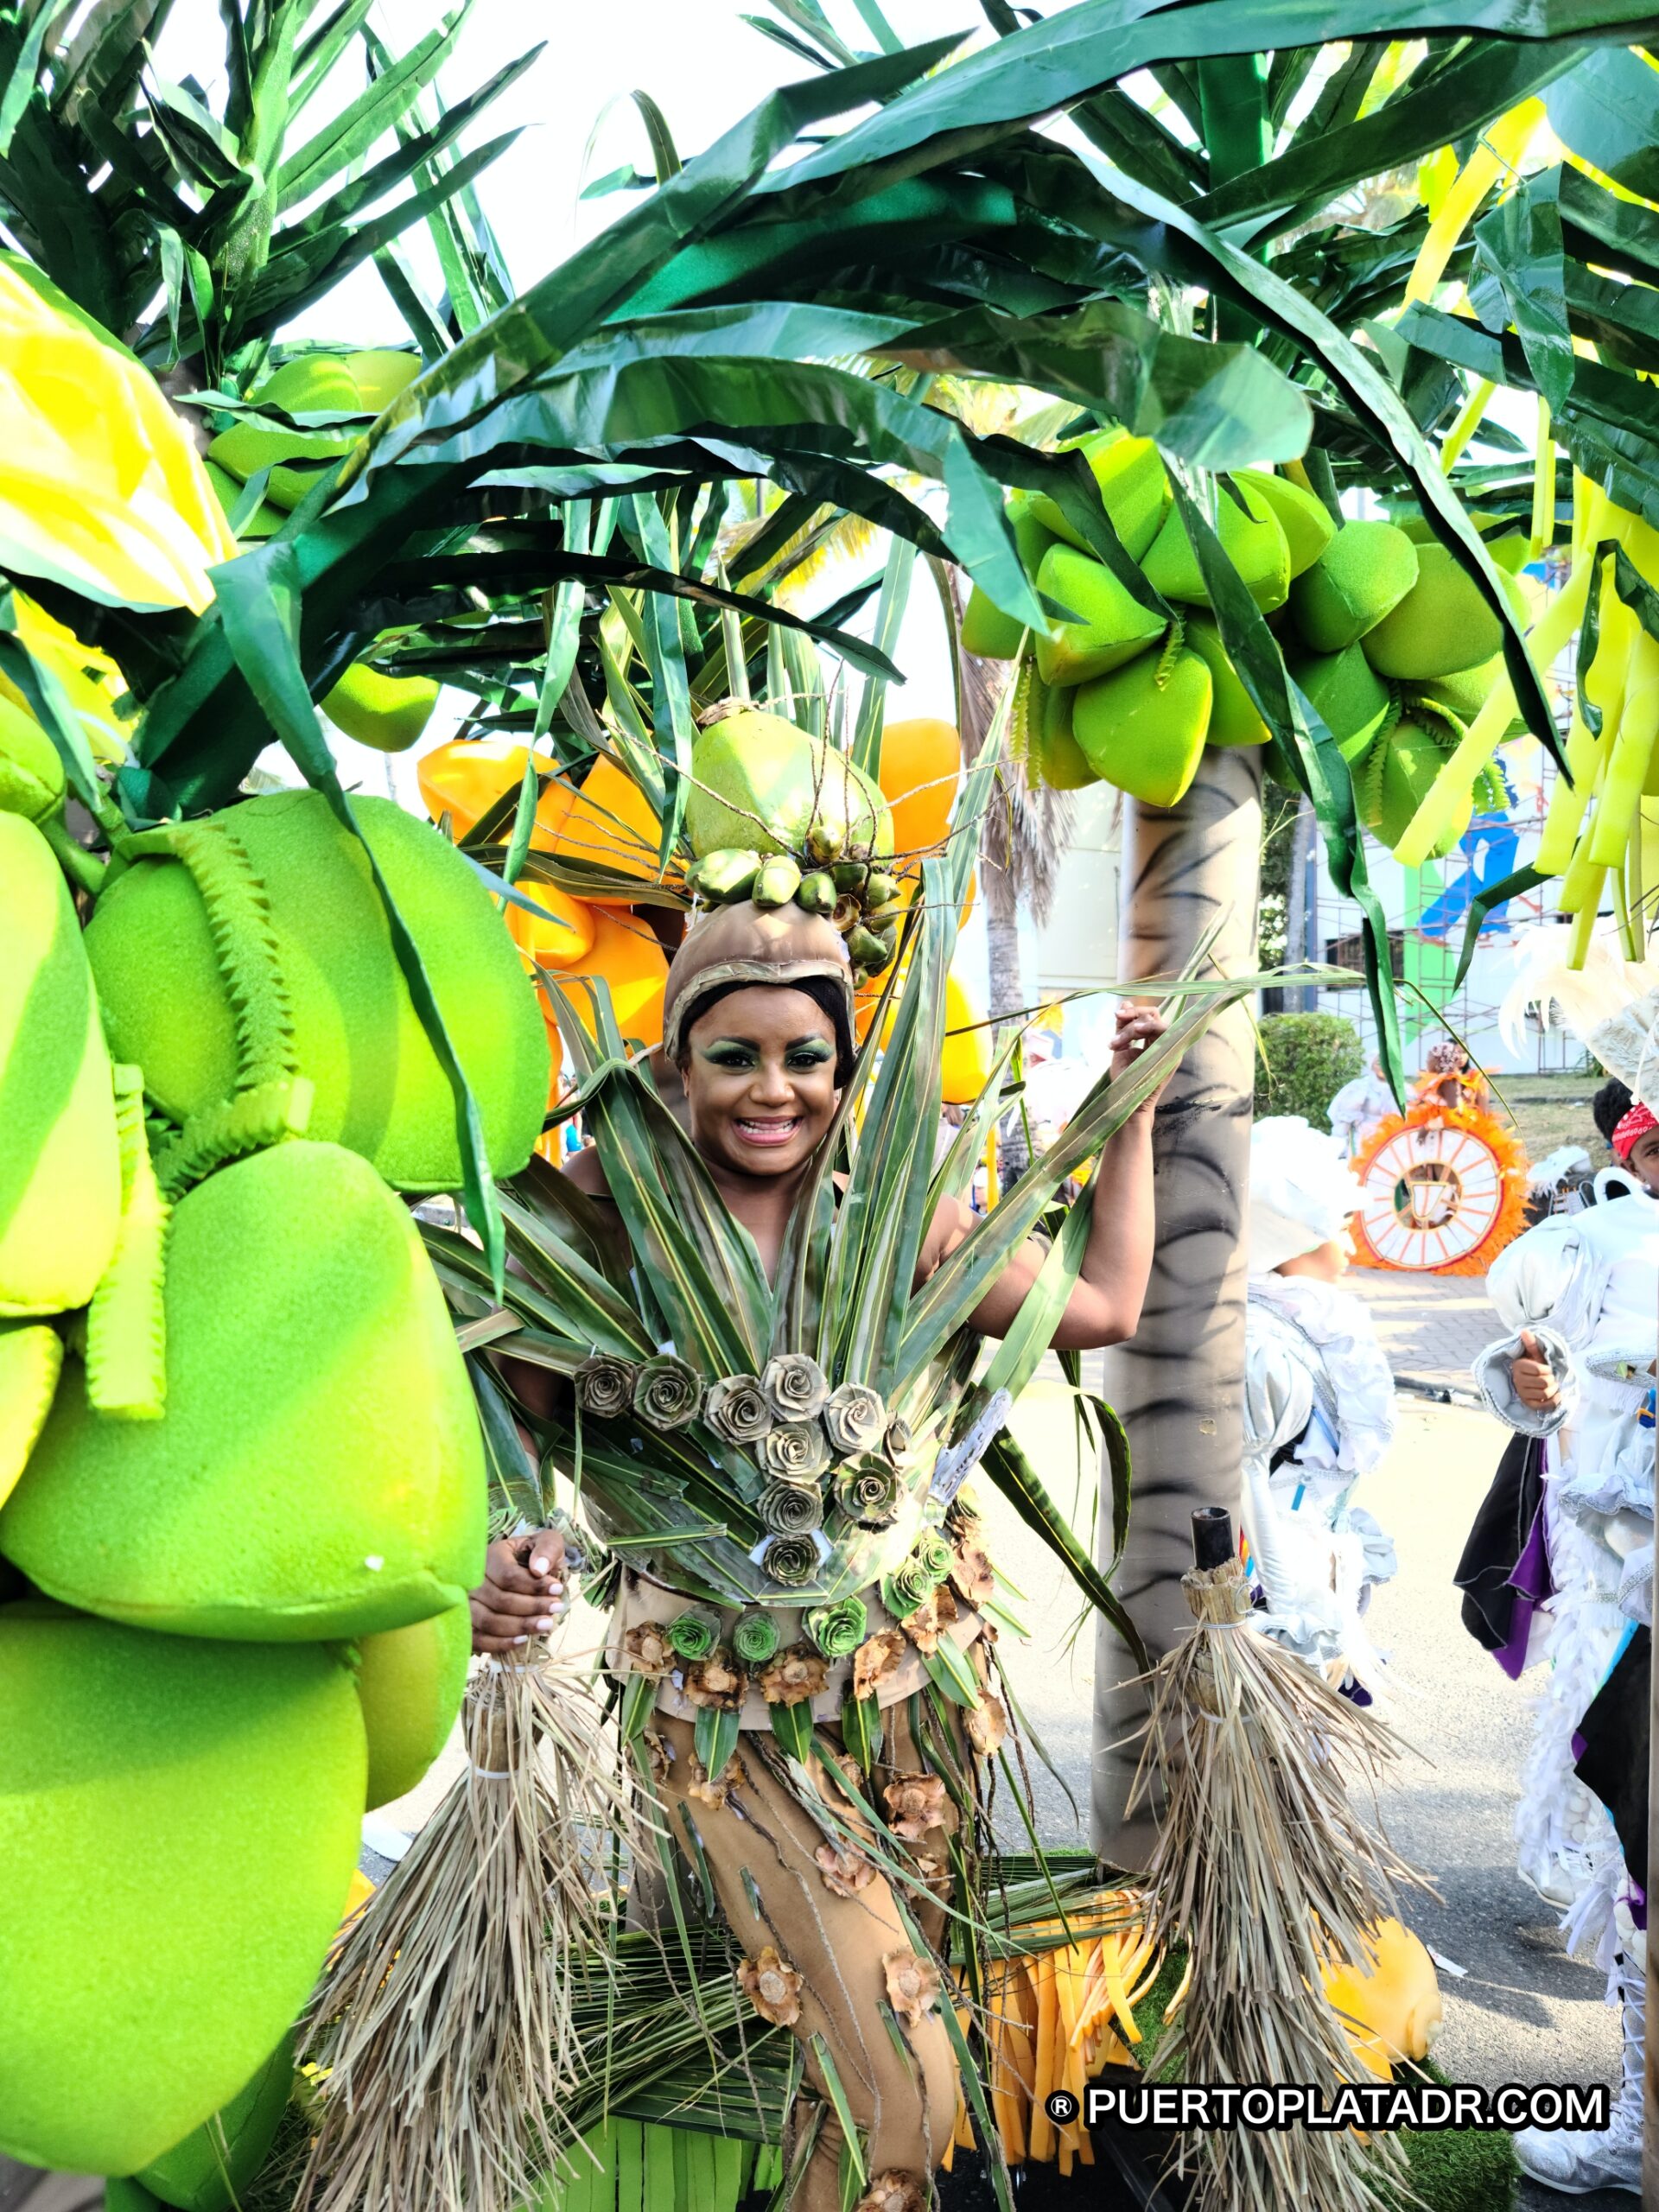 Carnival day in Puerto Plata Dominican Republic.